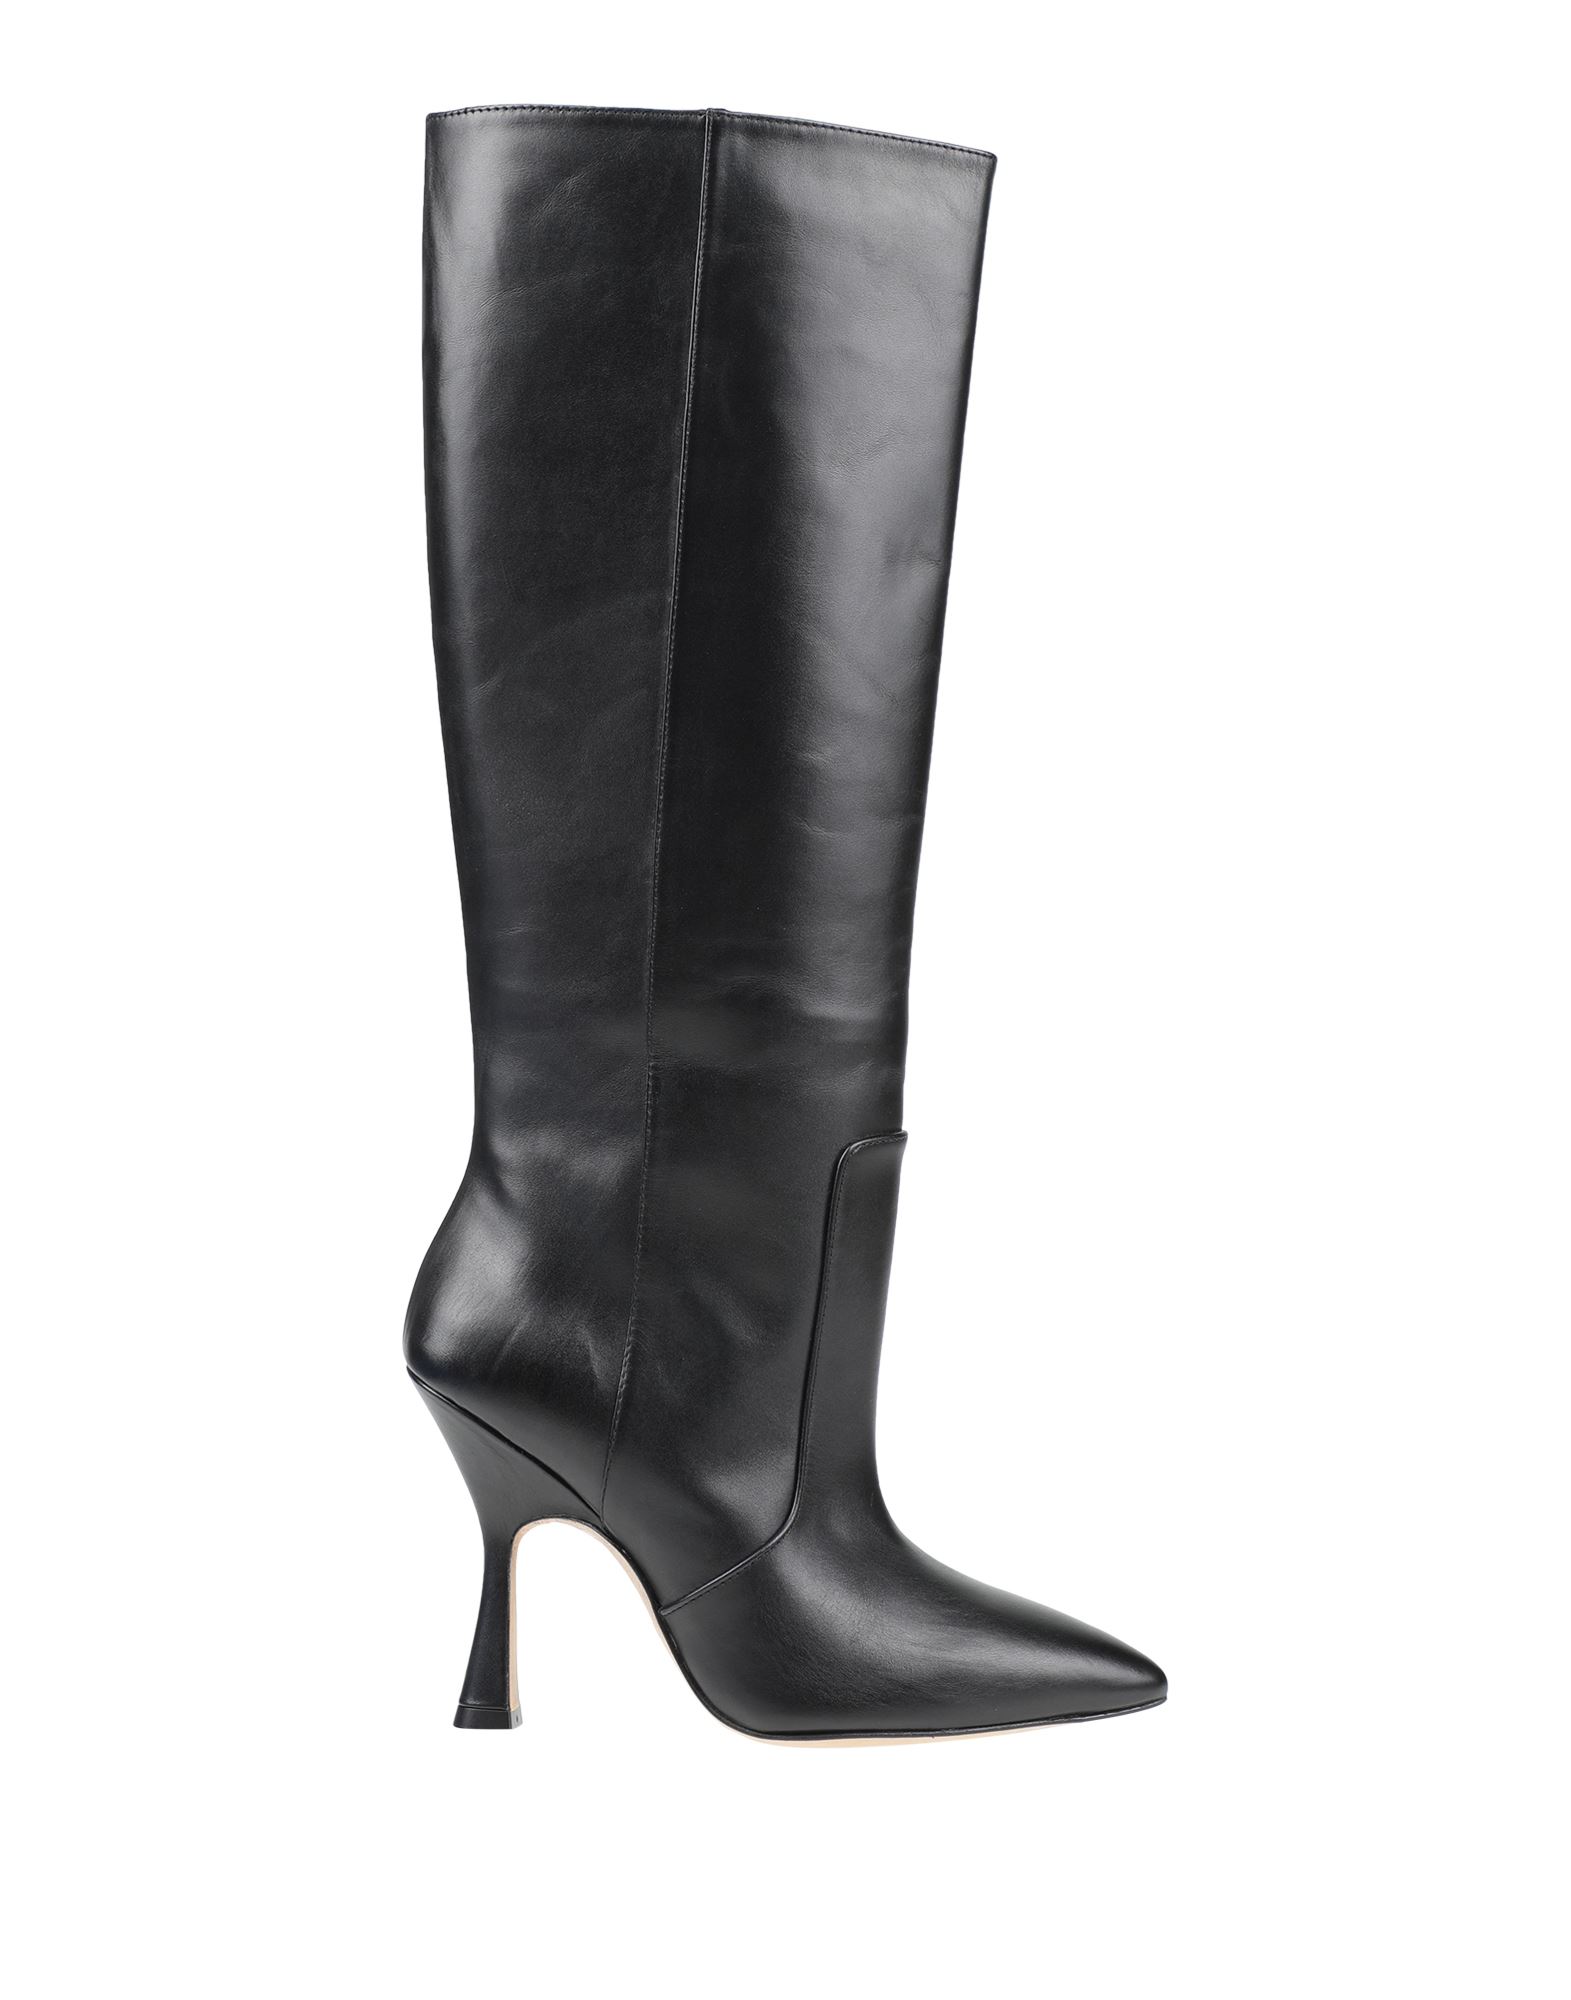 Shop Stuart Weitzman Woman Boot Black Size 10.5 Calfskin